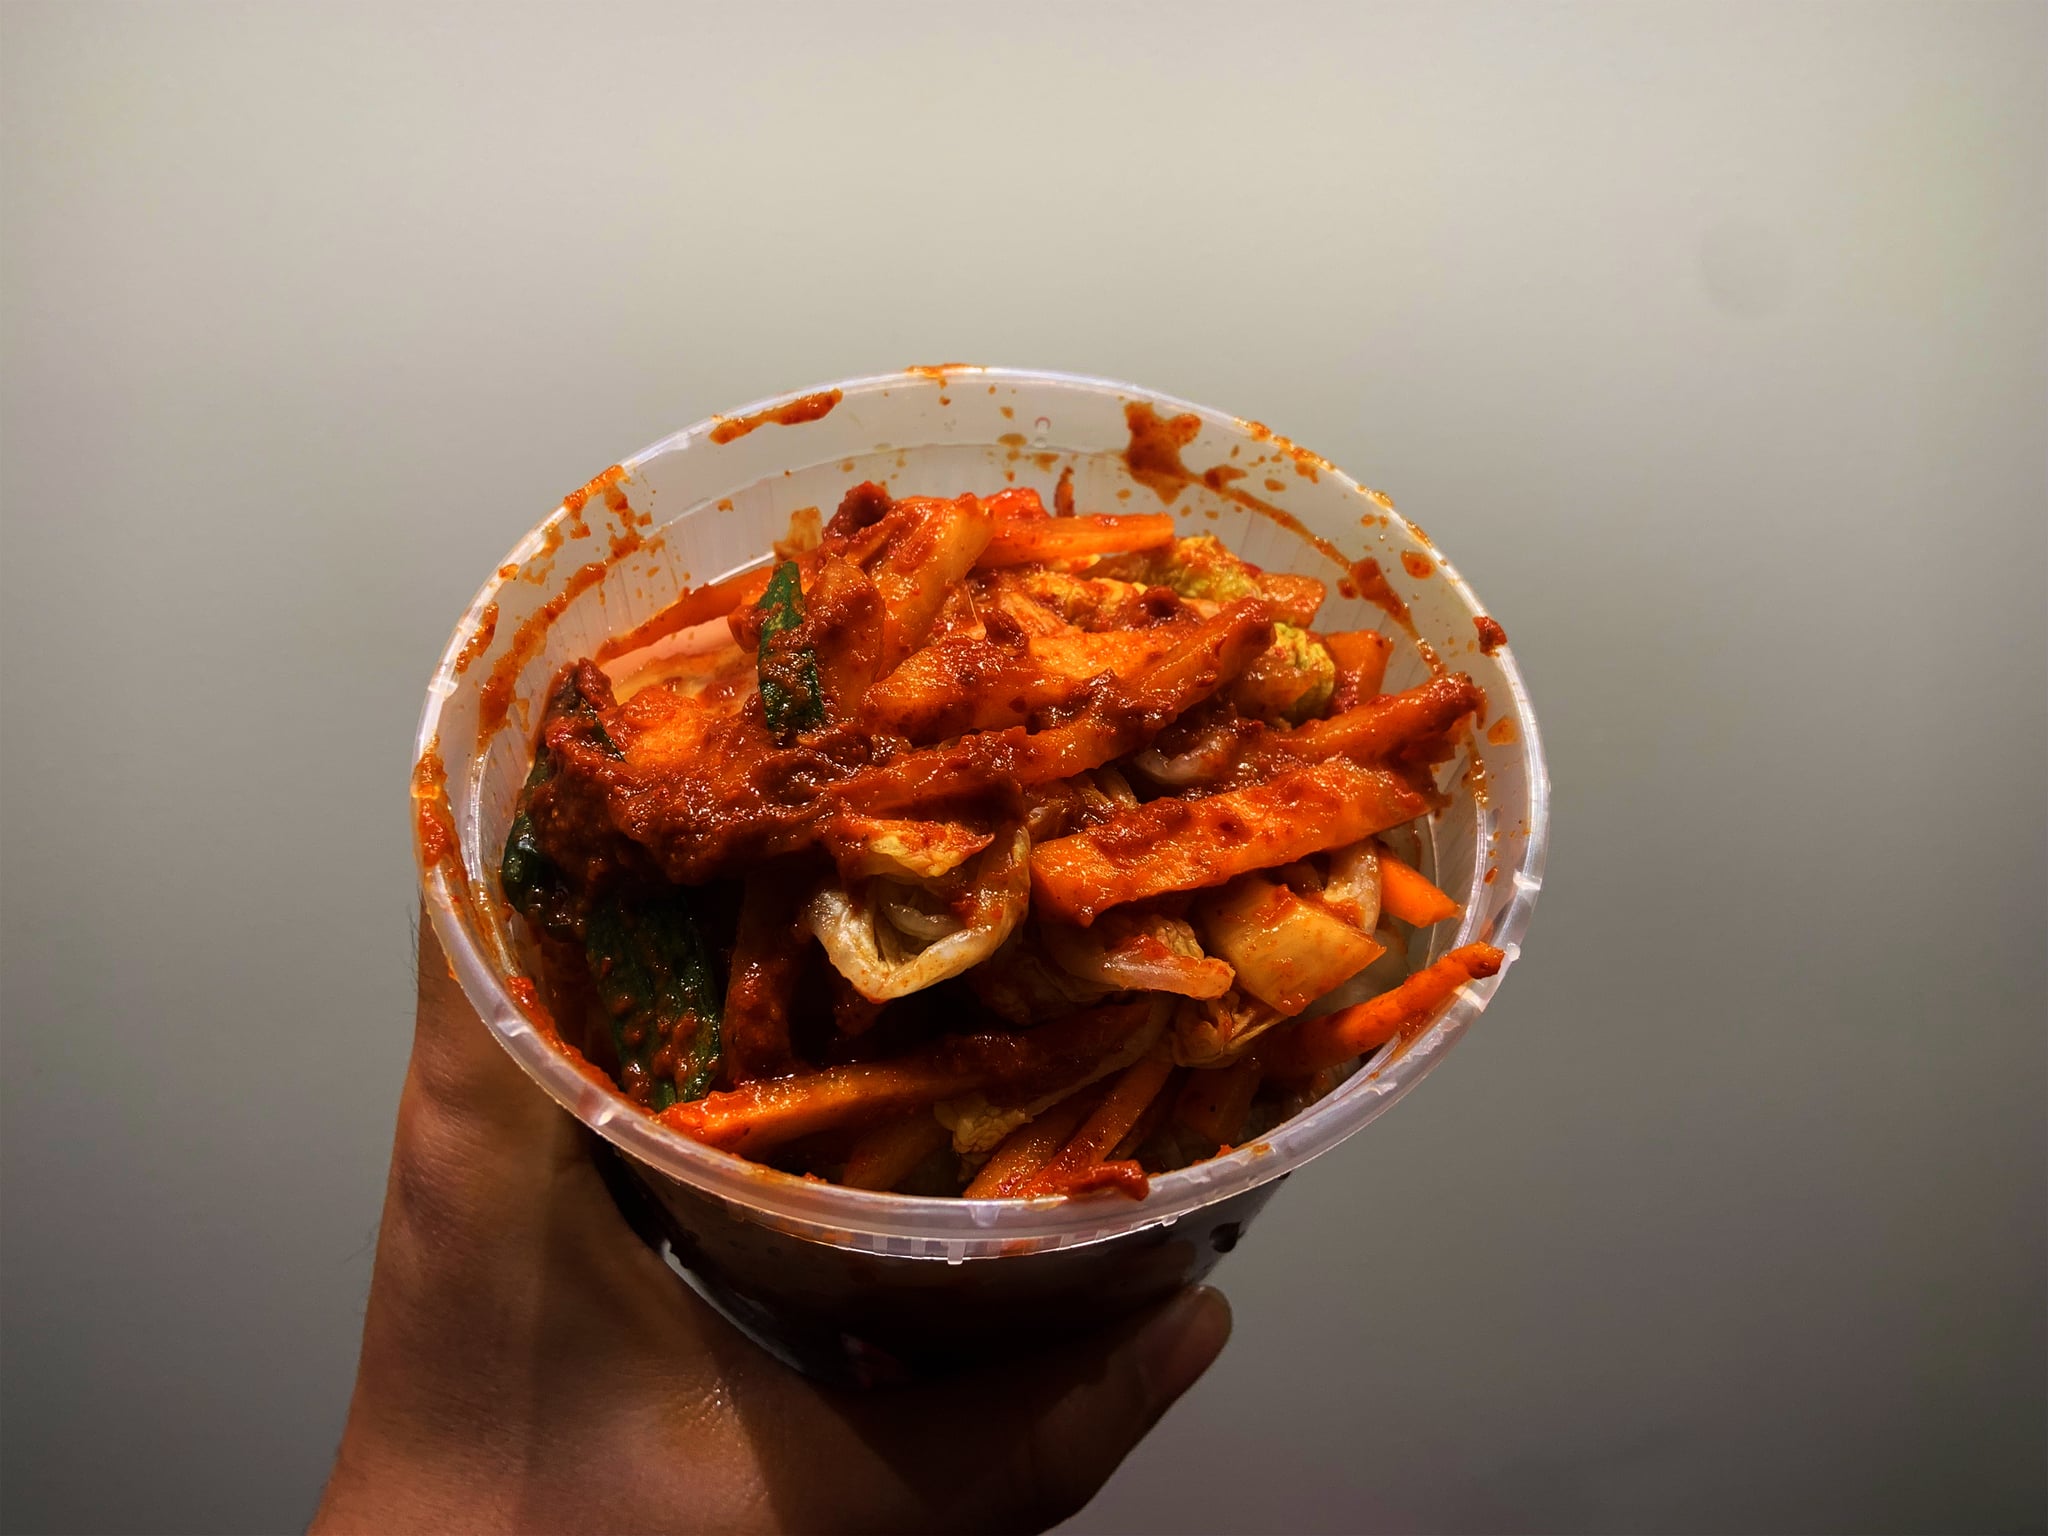 Homemade Kimchi Recipe With Photos | POPSUGAR Food